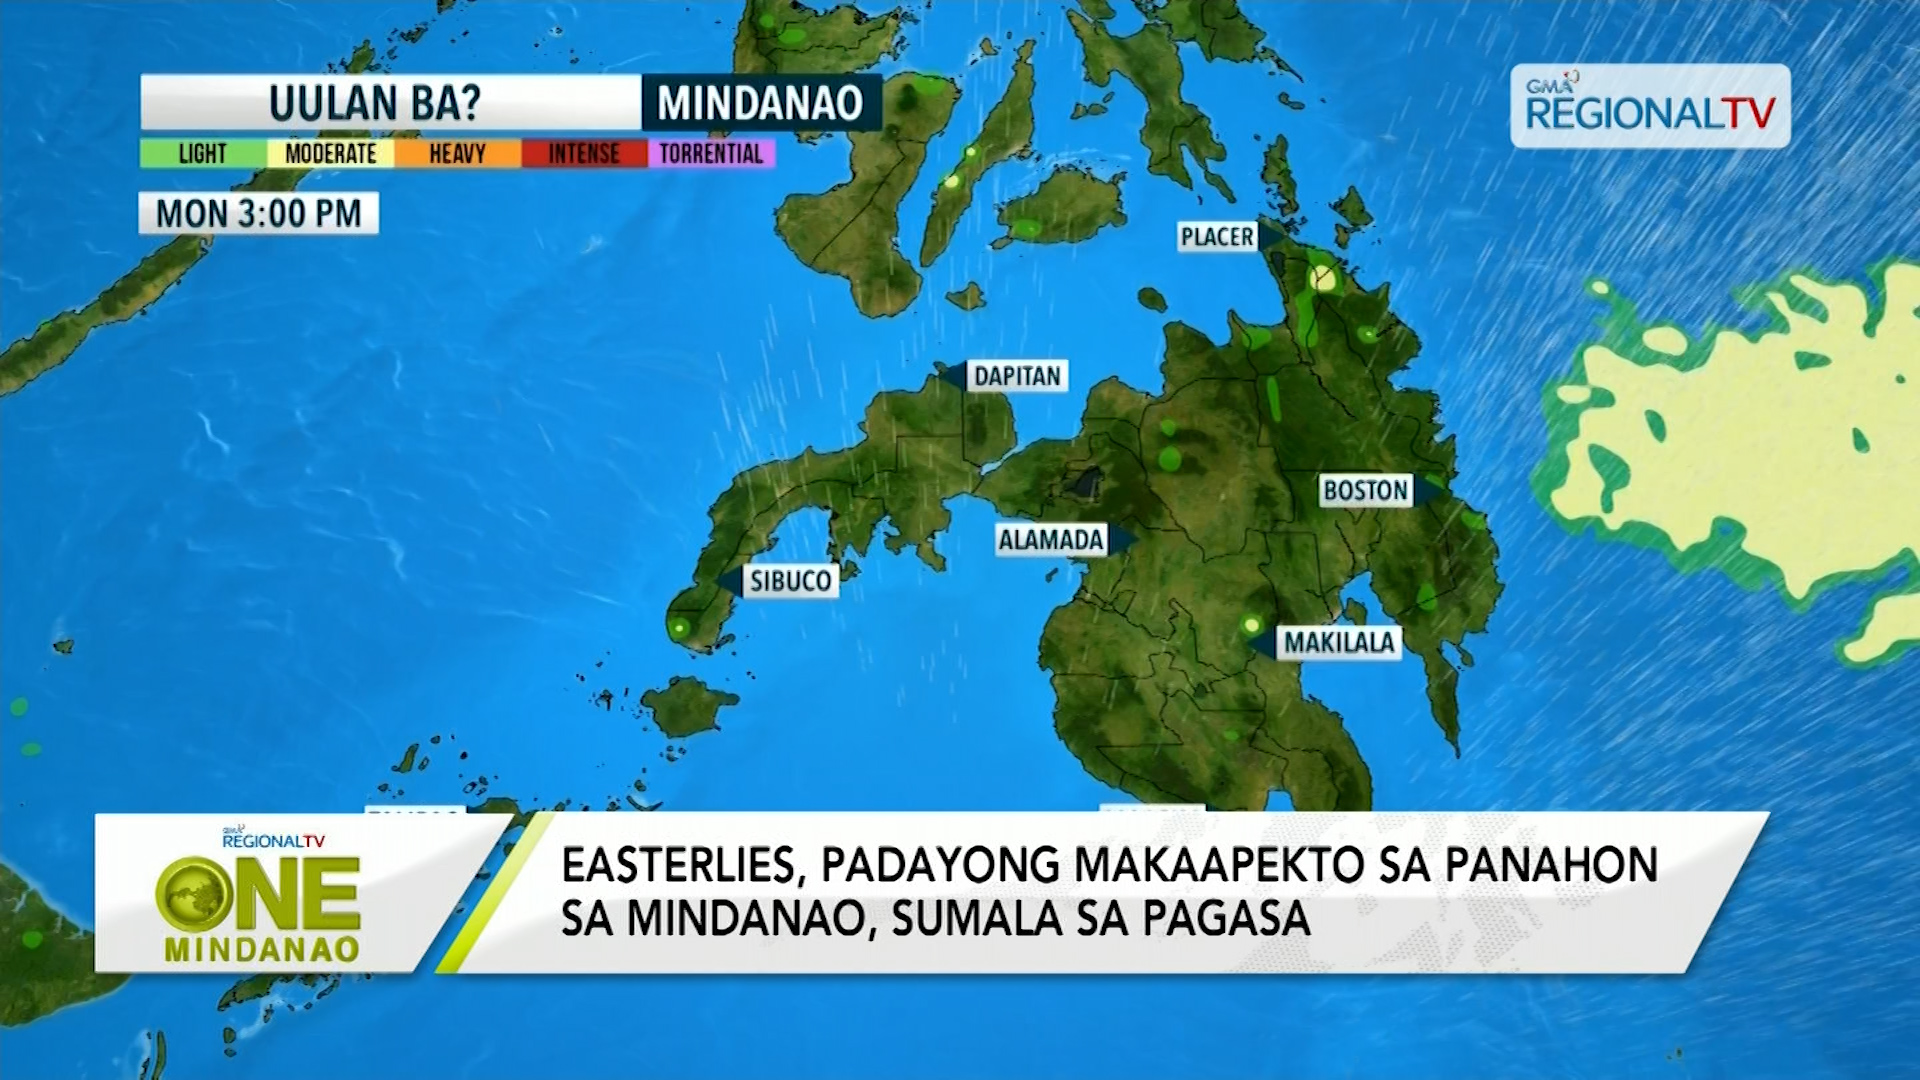 Easterlies, padayong makaapekto sa panahon sa Mindanao